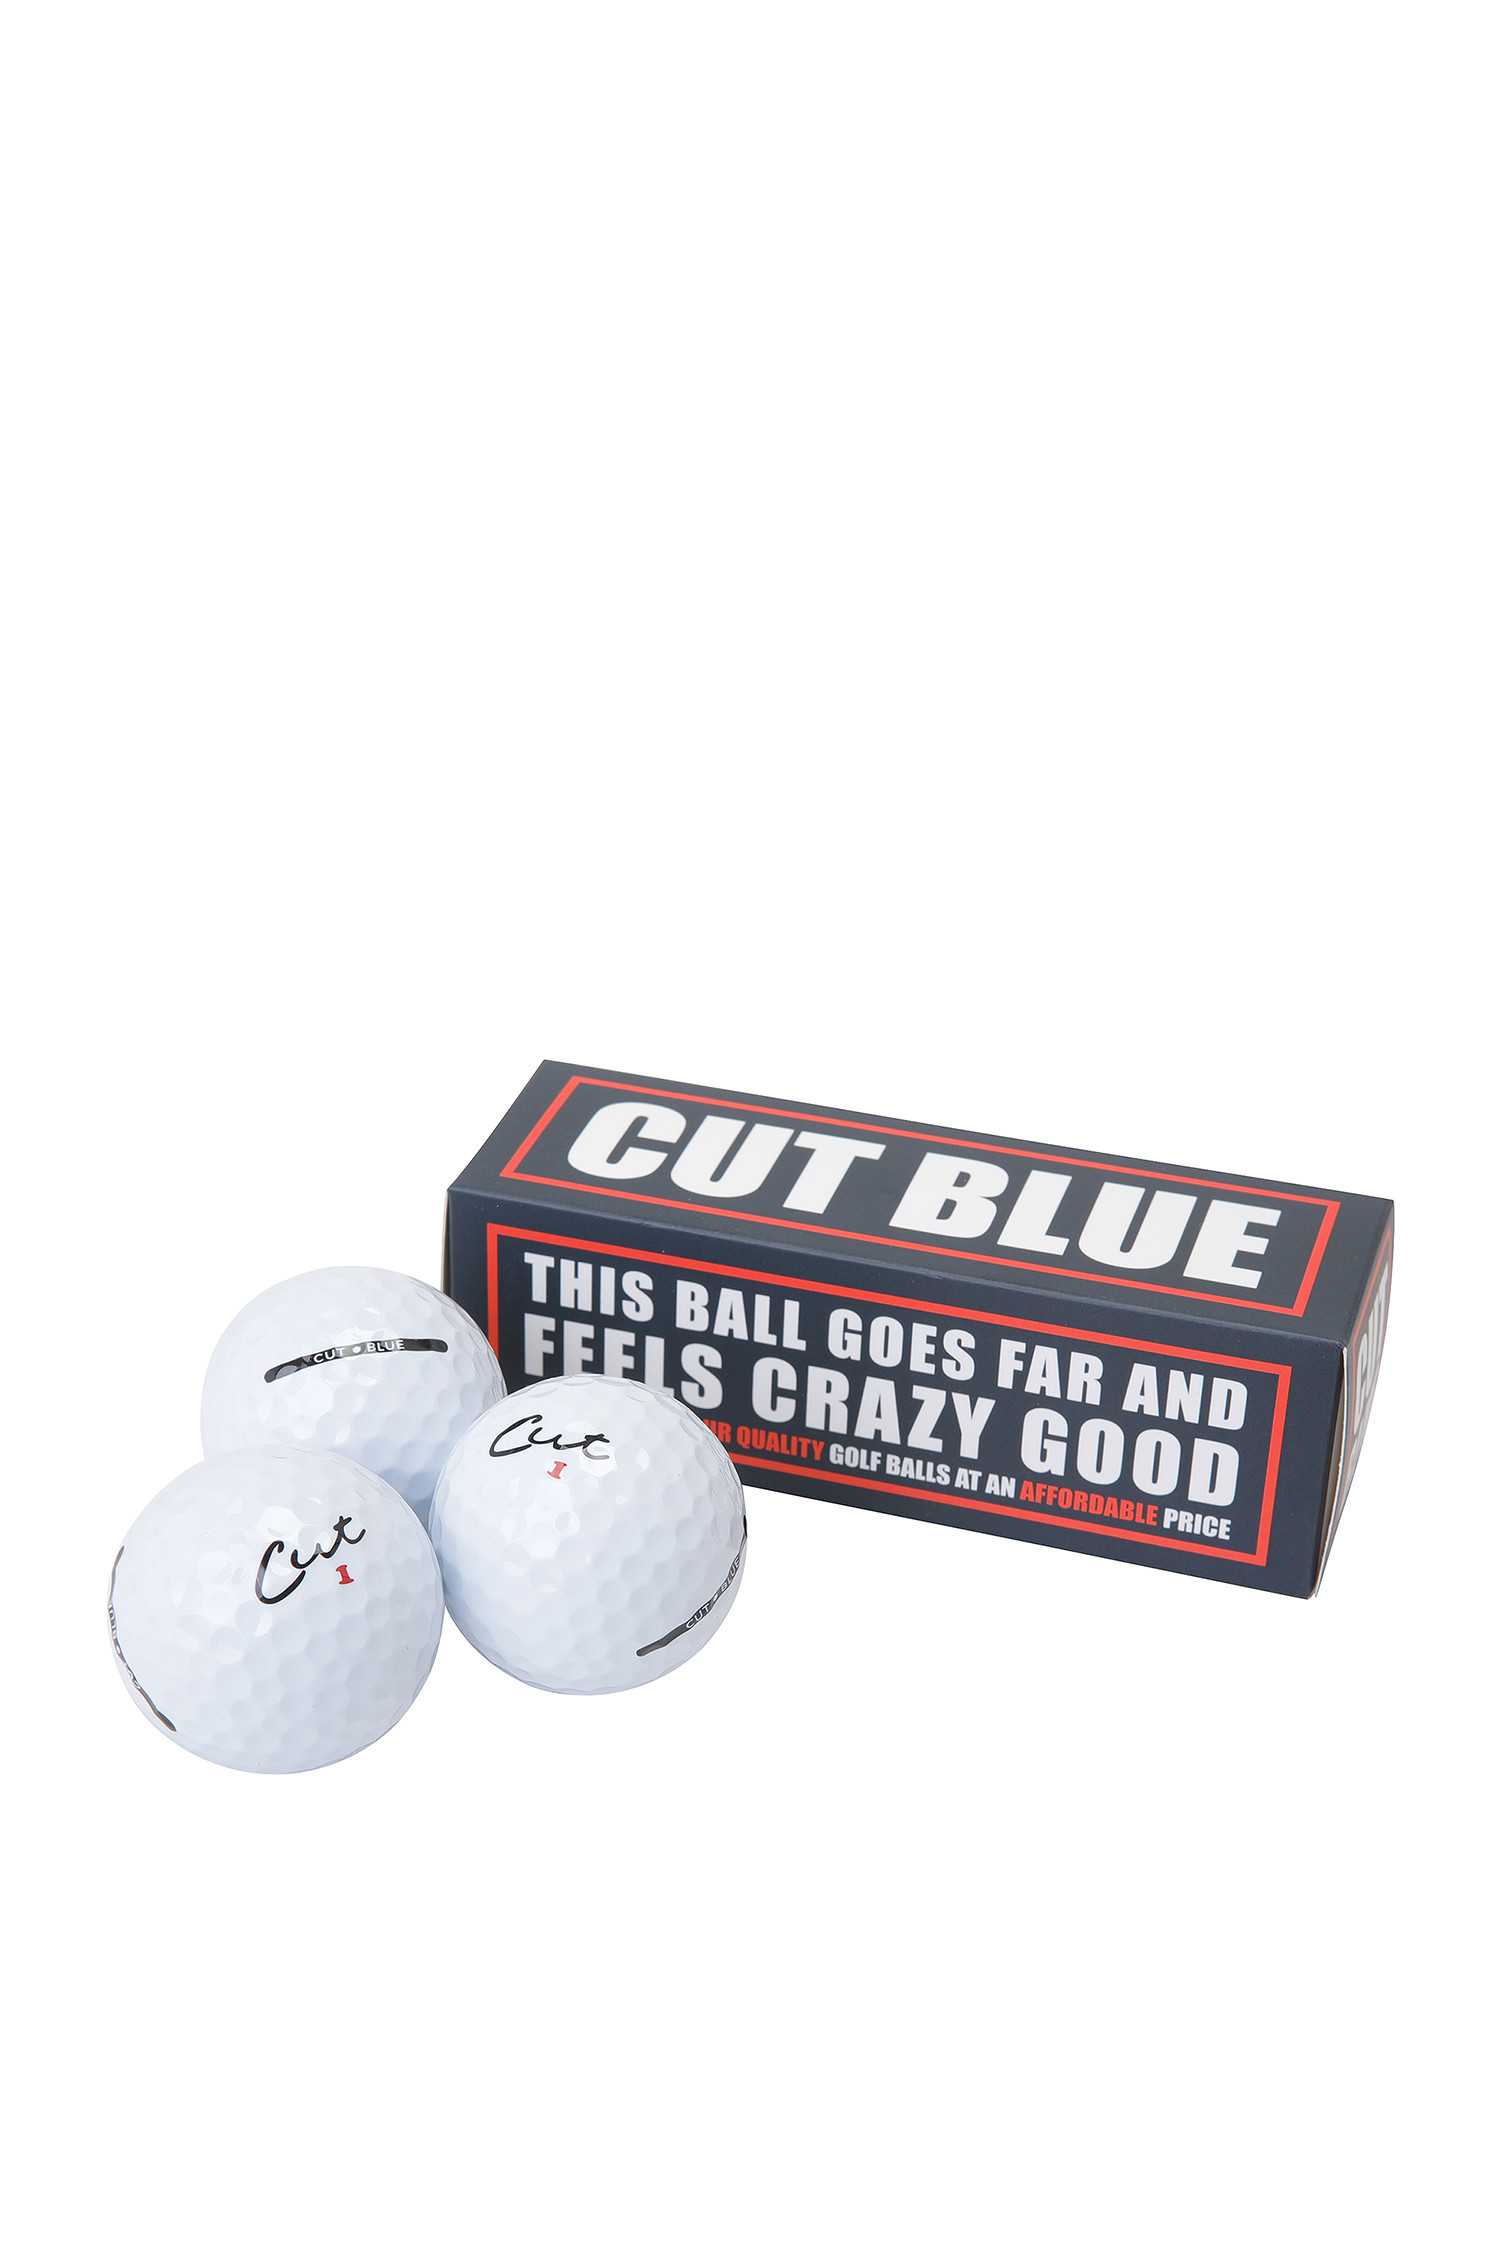 Cut Blue 4 Piece Urethane – Cut Golf